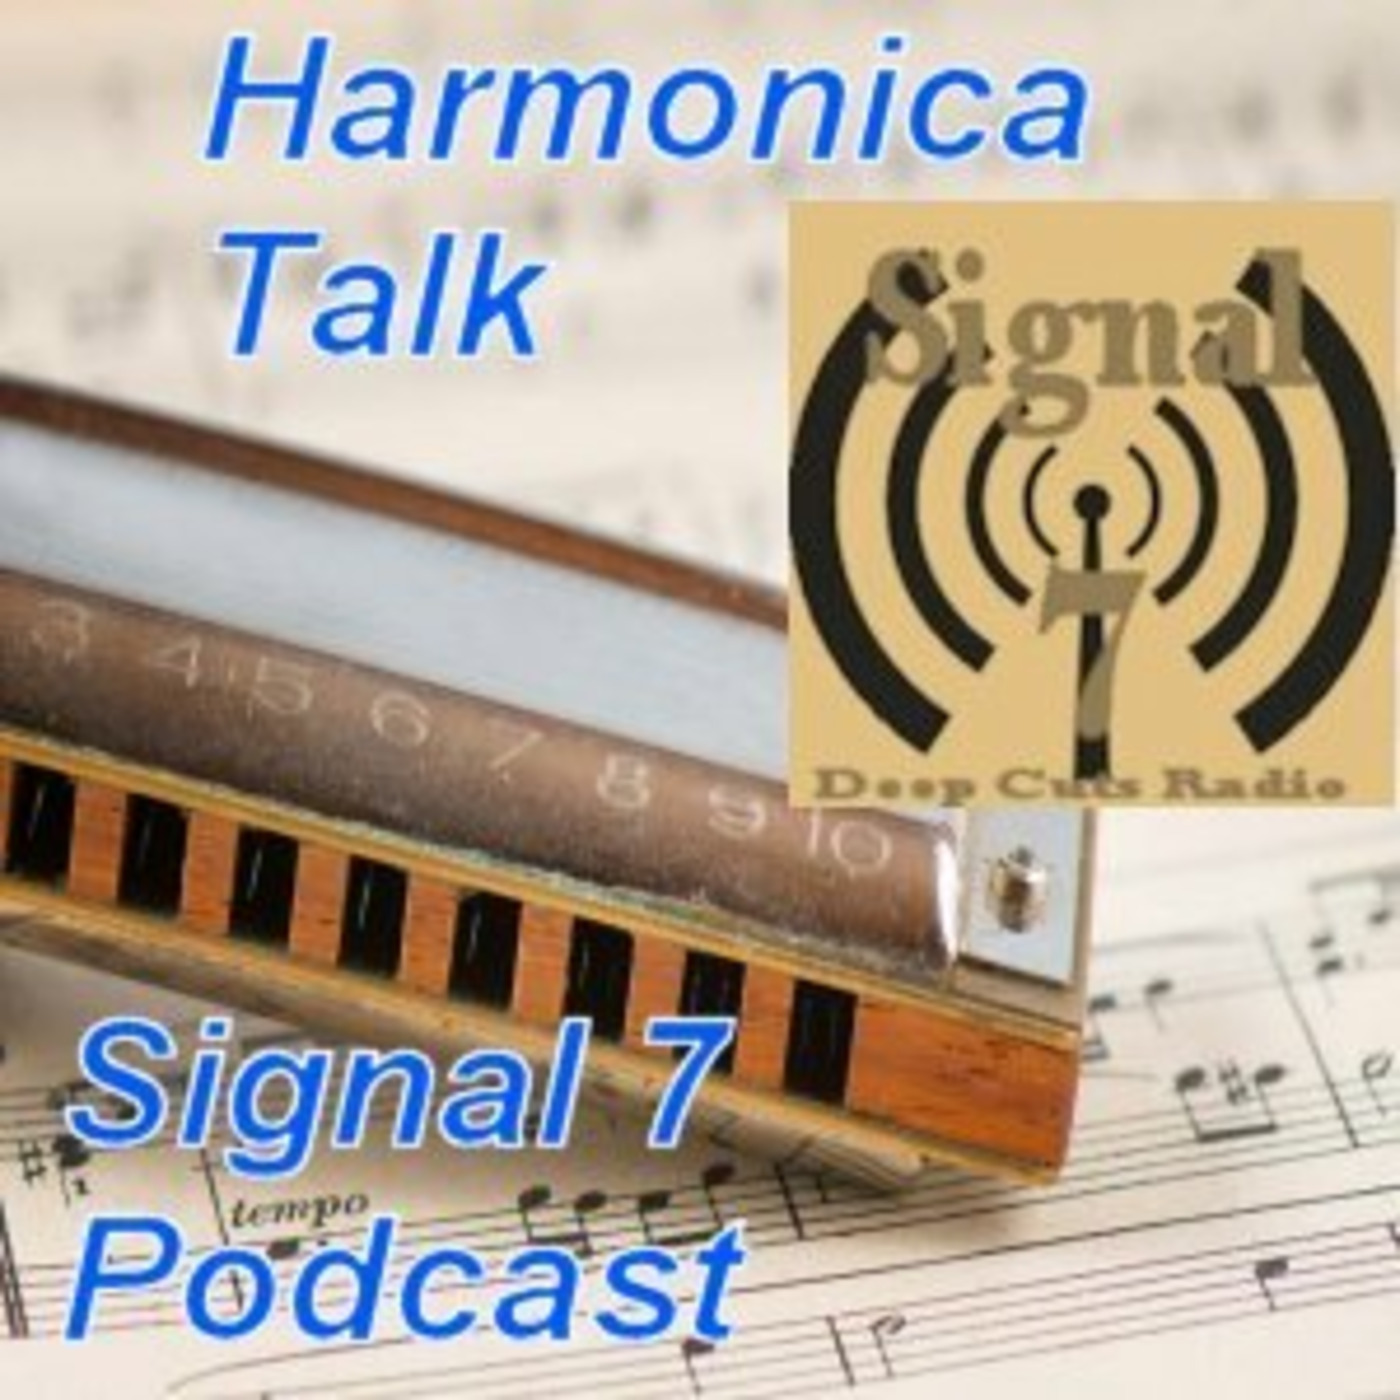 Episode 152: Harmonica